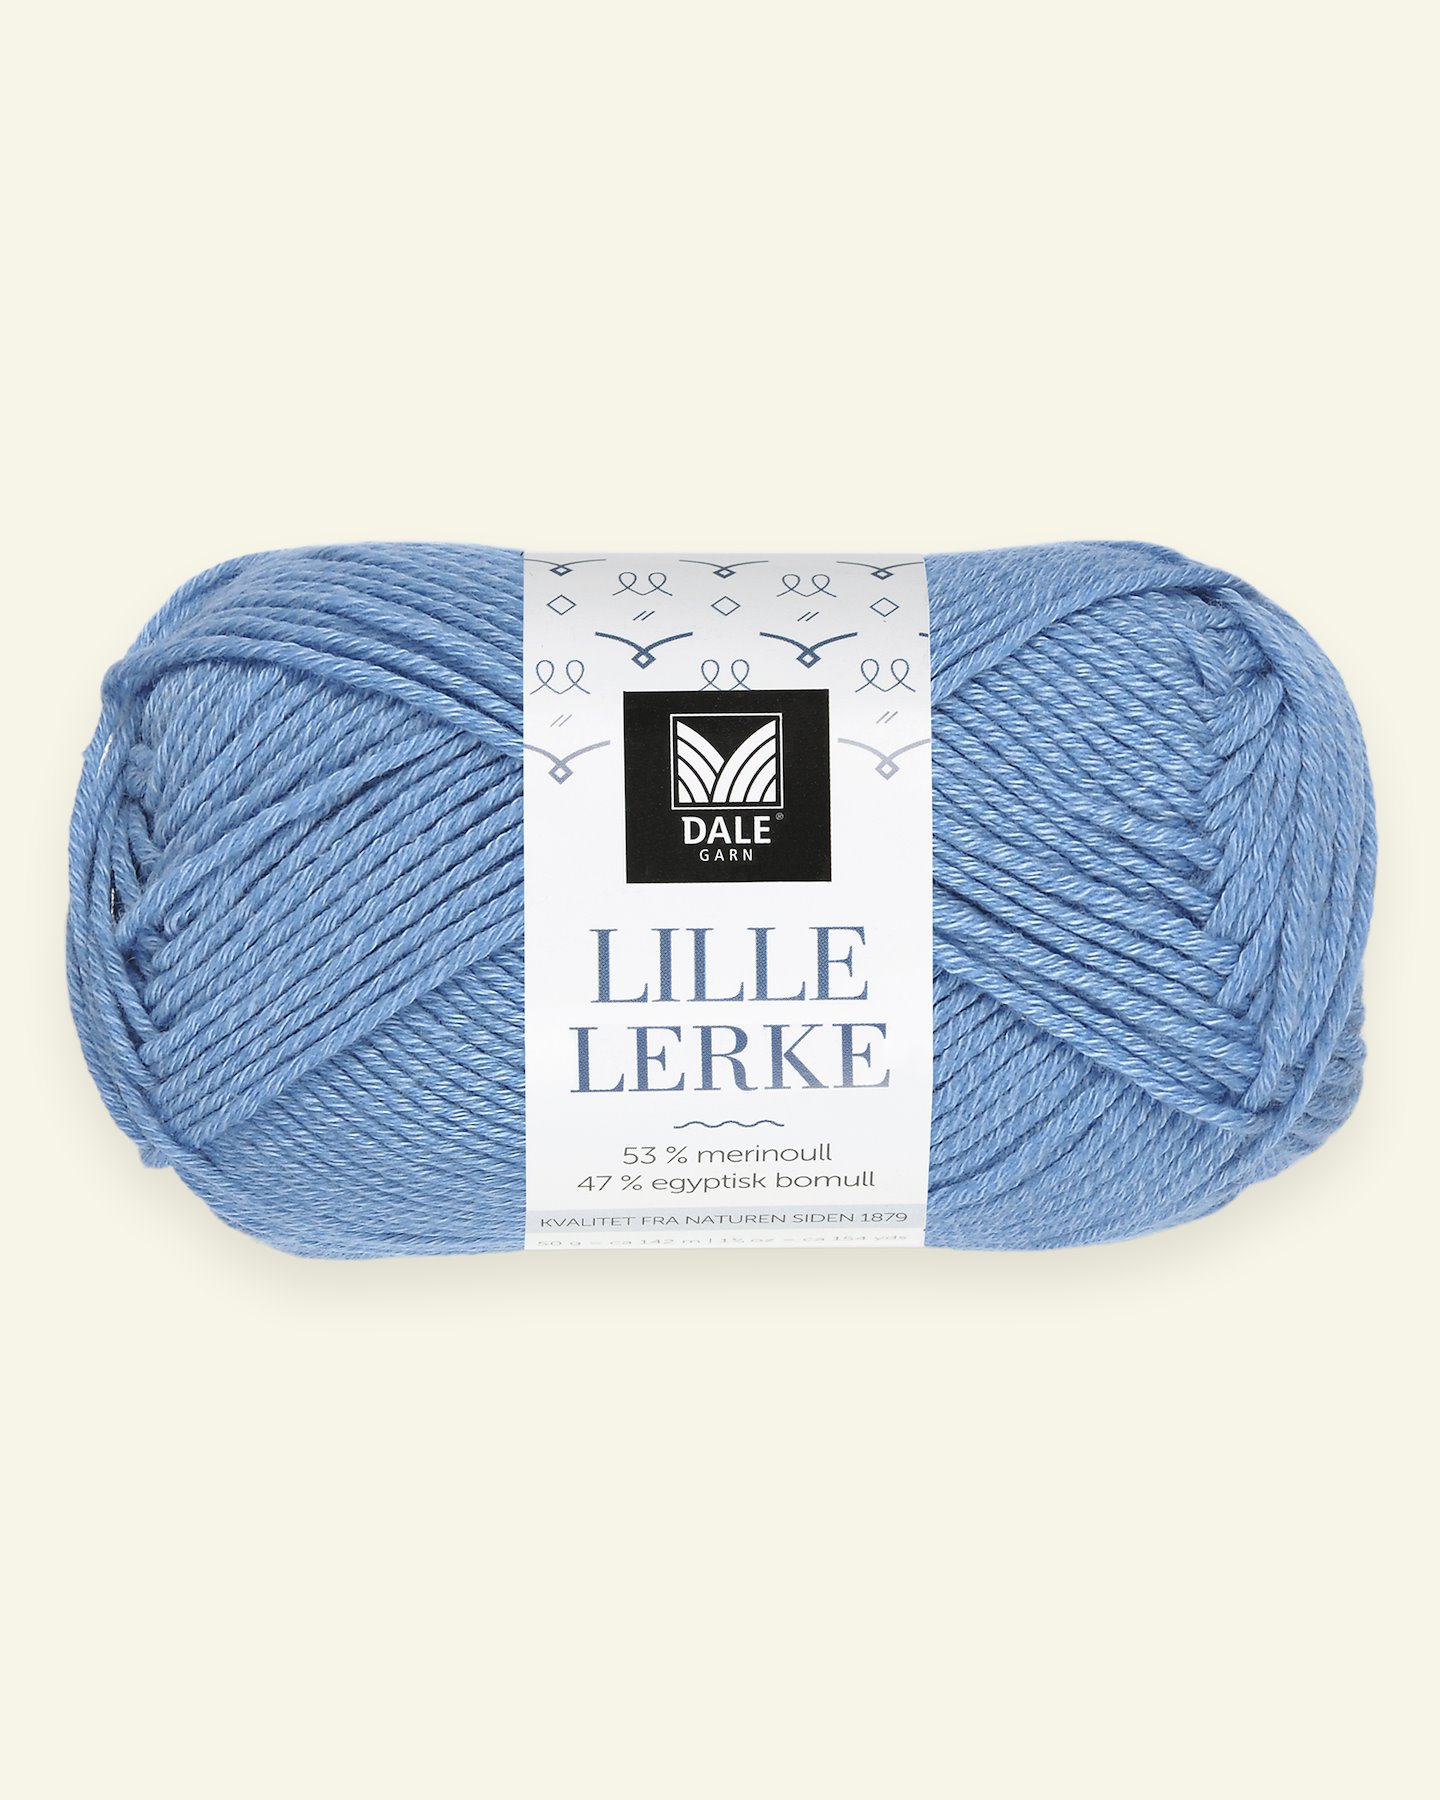 Dale Garn, Merino/Baunwolle "Lille Lerke", blau (8160) 90000427_pack